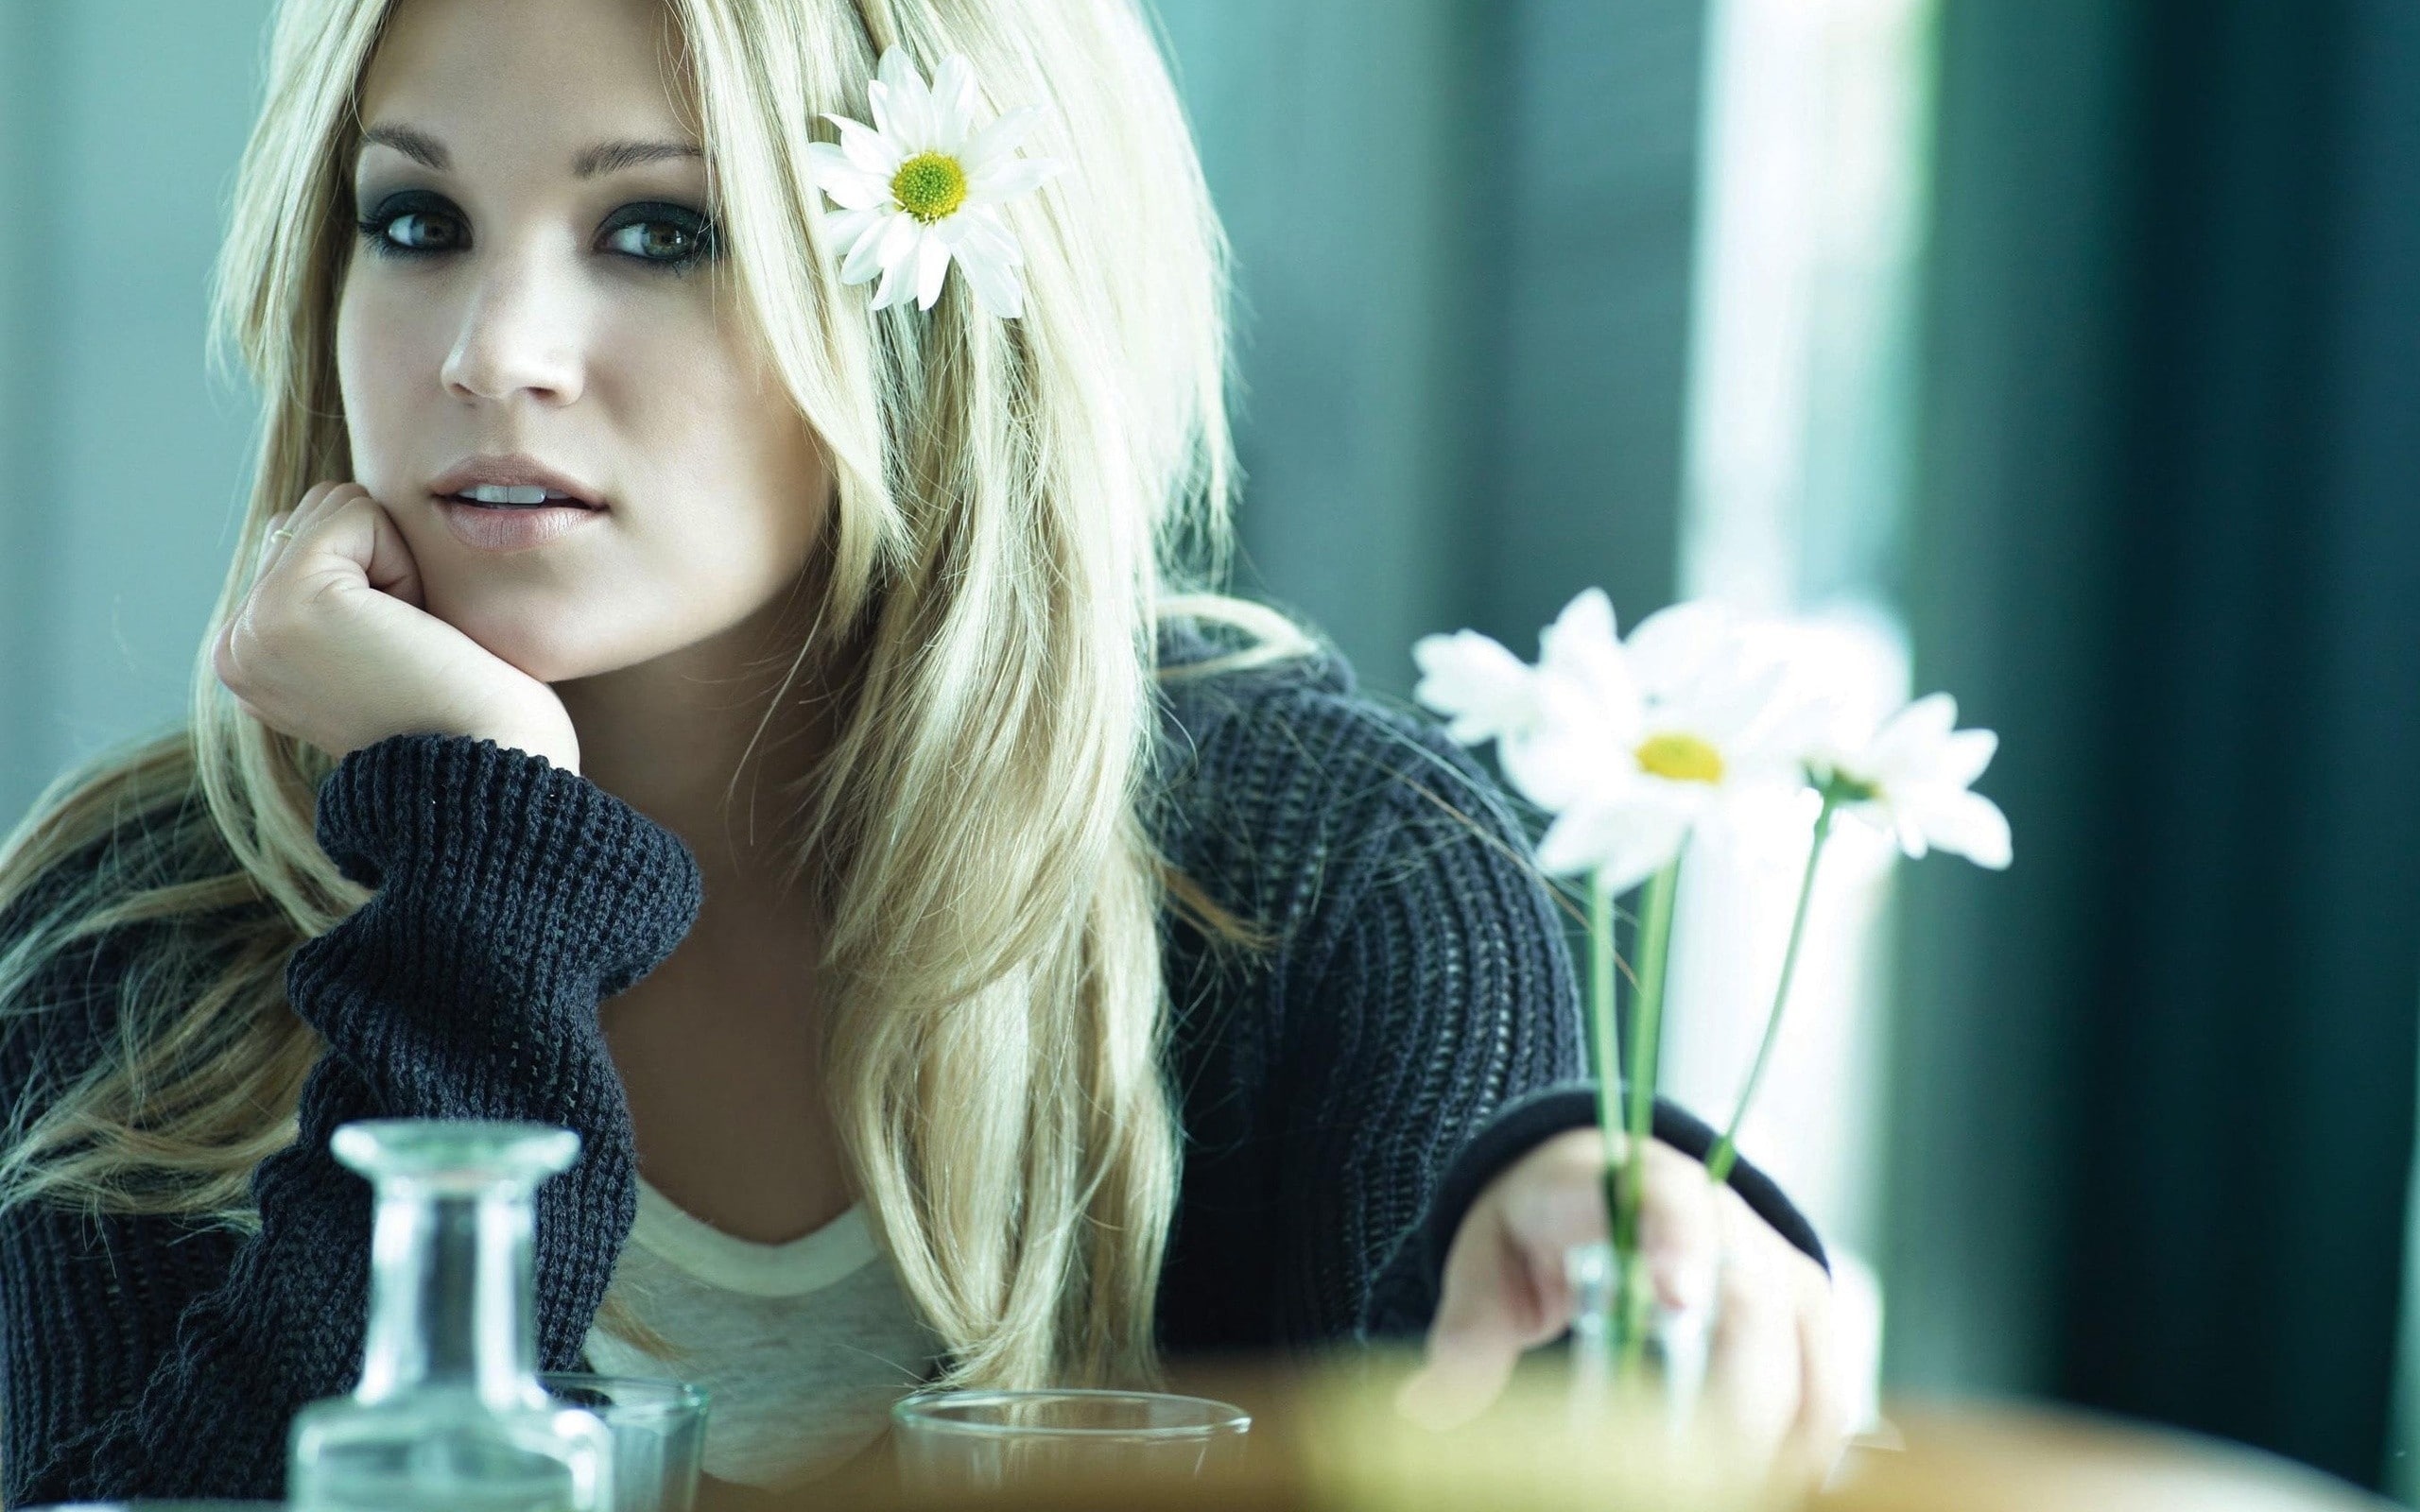 women, Carrie Underwood, flowers, blonde, sweater, singer, celebrity